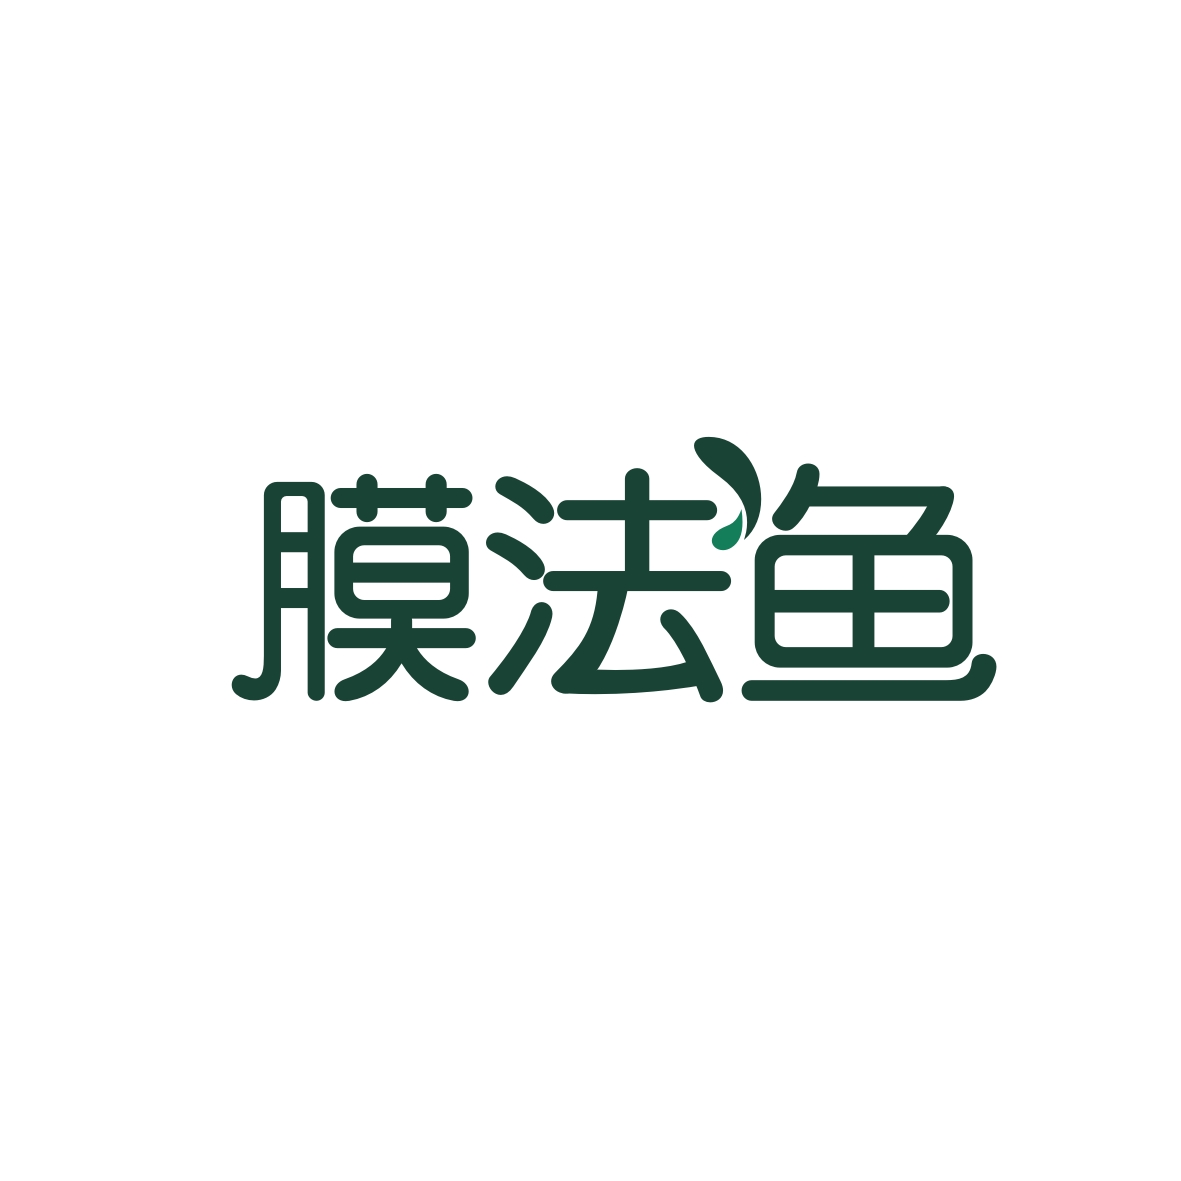 广州市君陌电子商务商行商标膜法鱼（03类）商标转让费用及联系方式